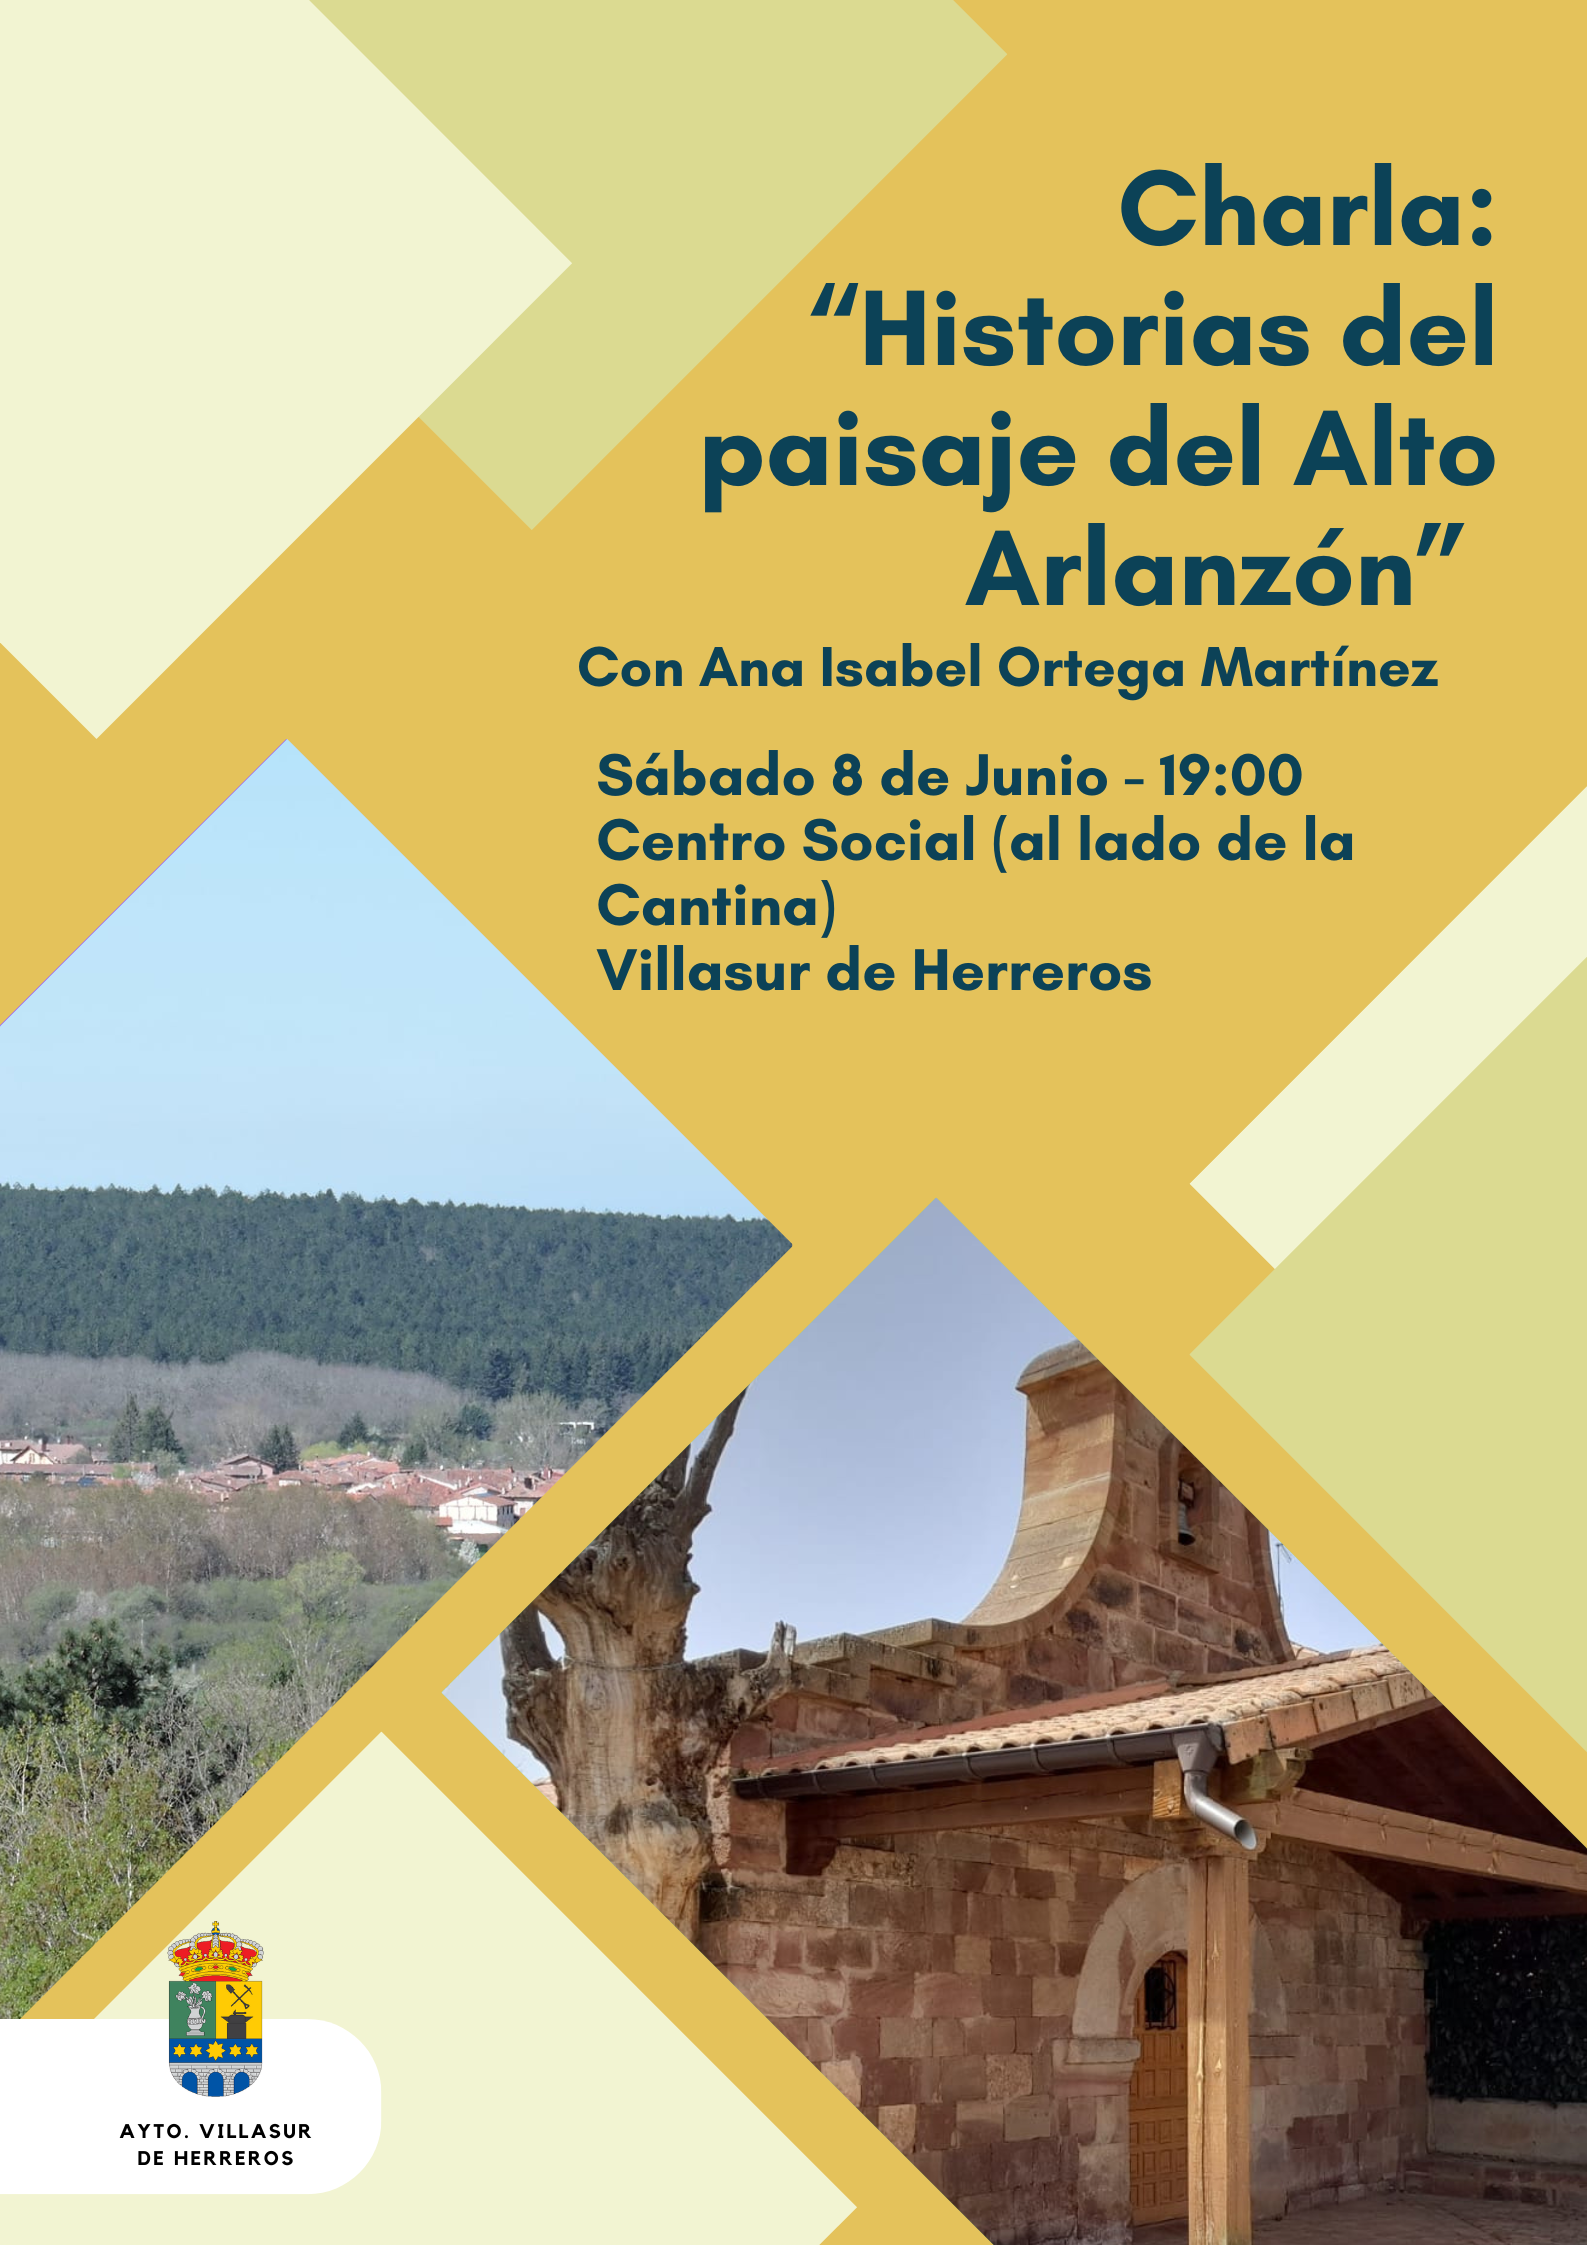 CHARLA: Historias del paisaje del Alto Arlanzón